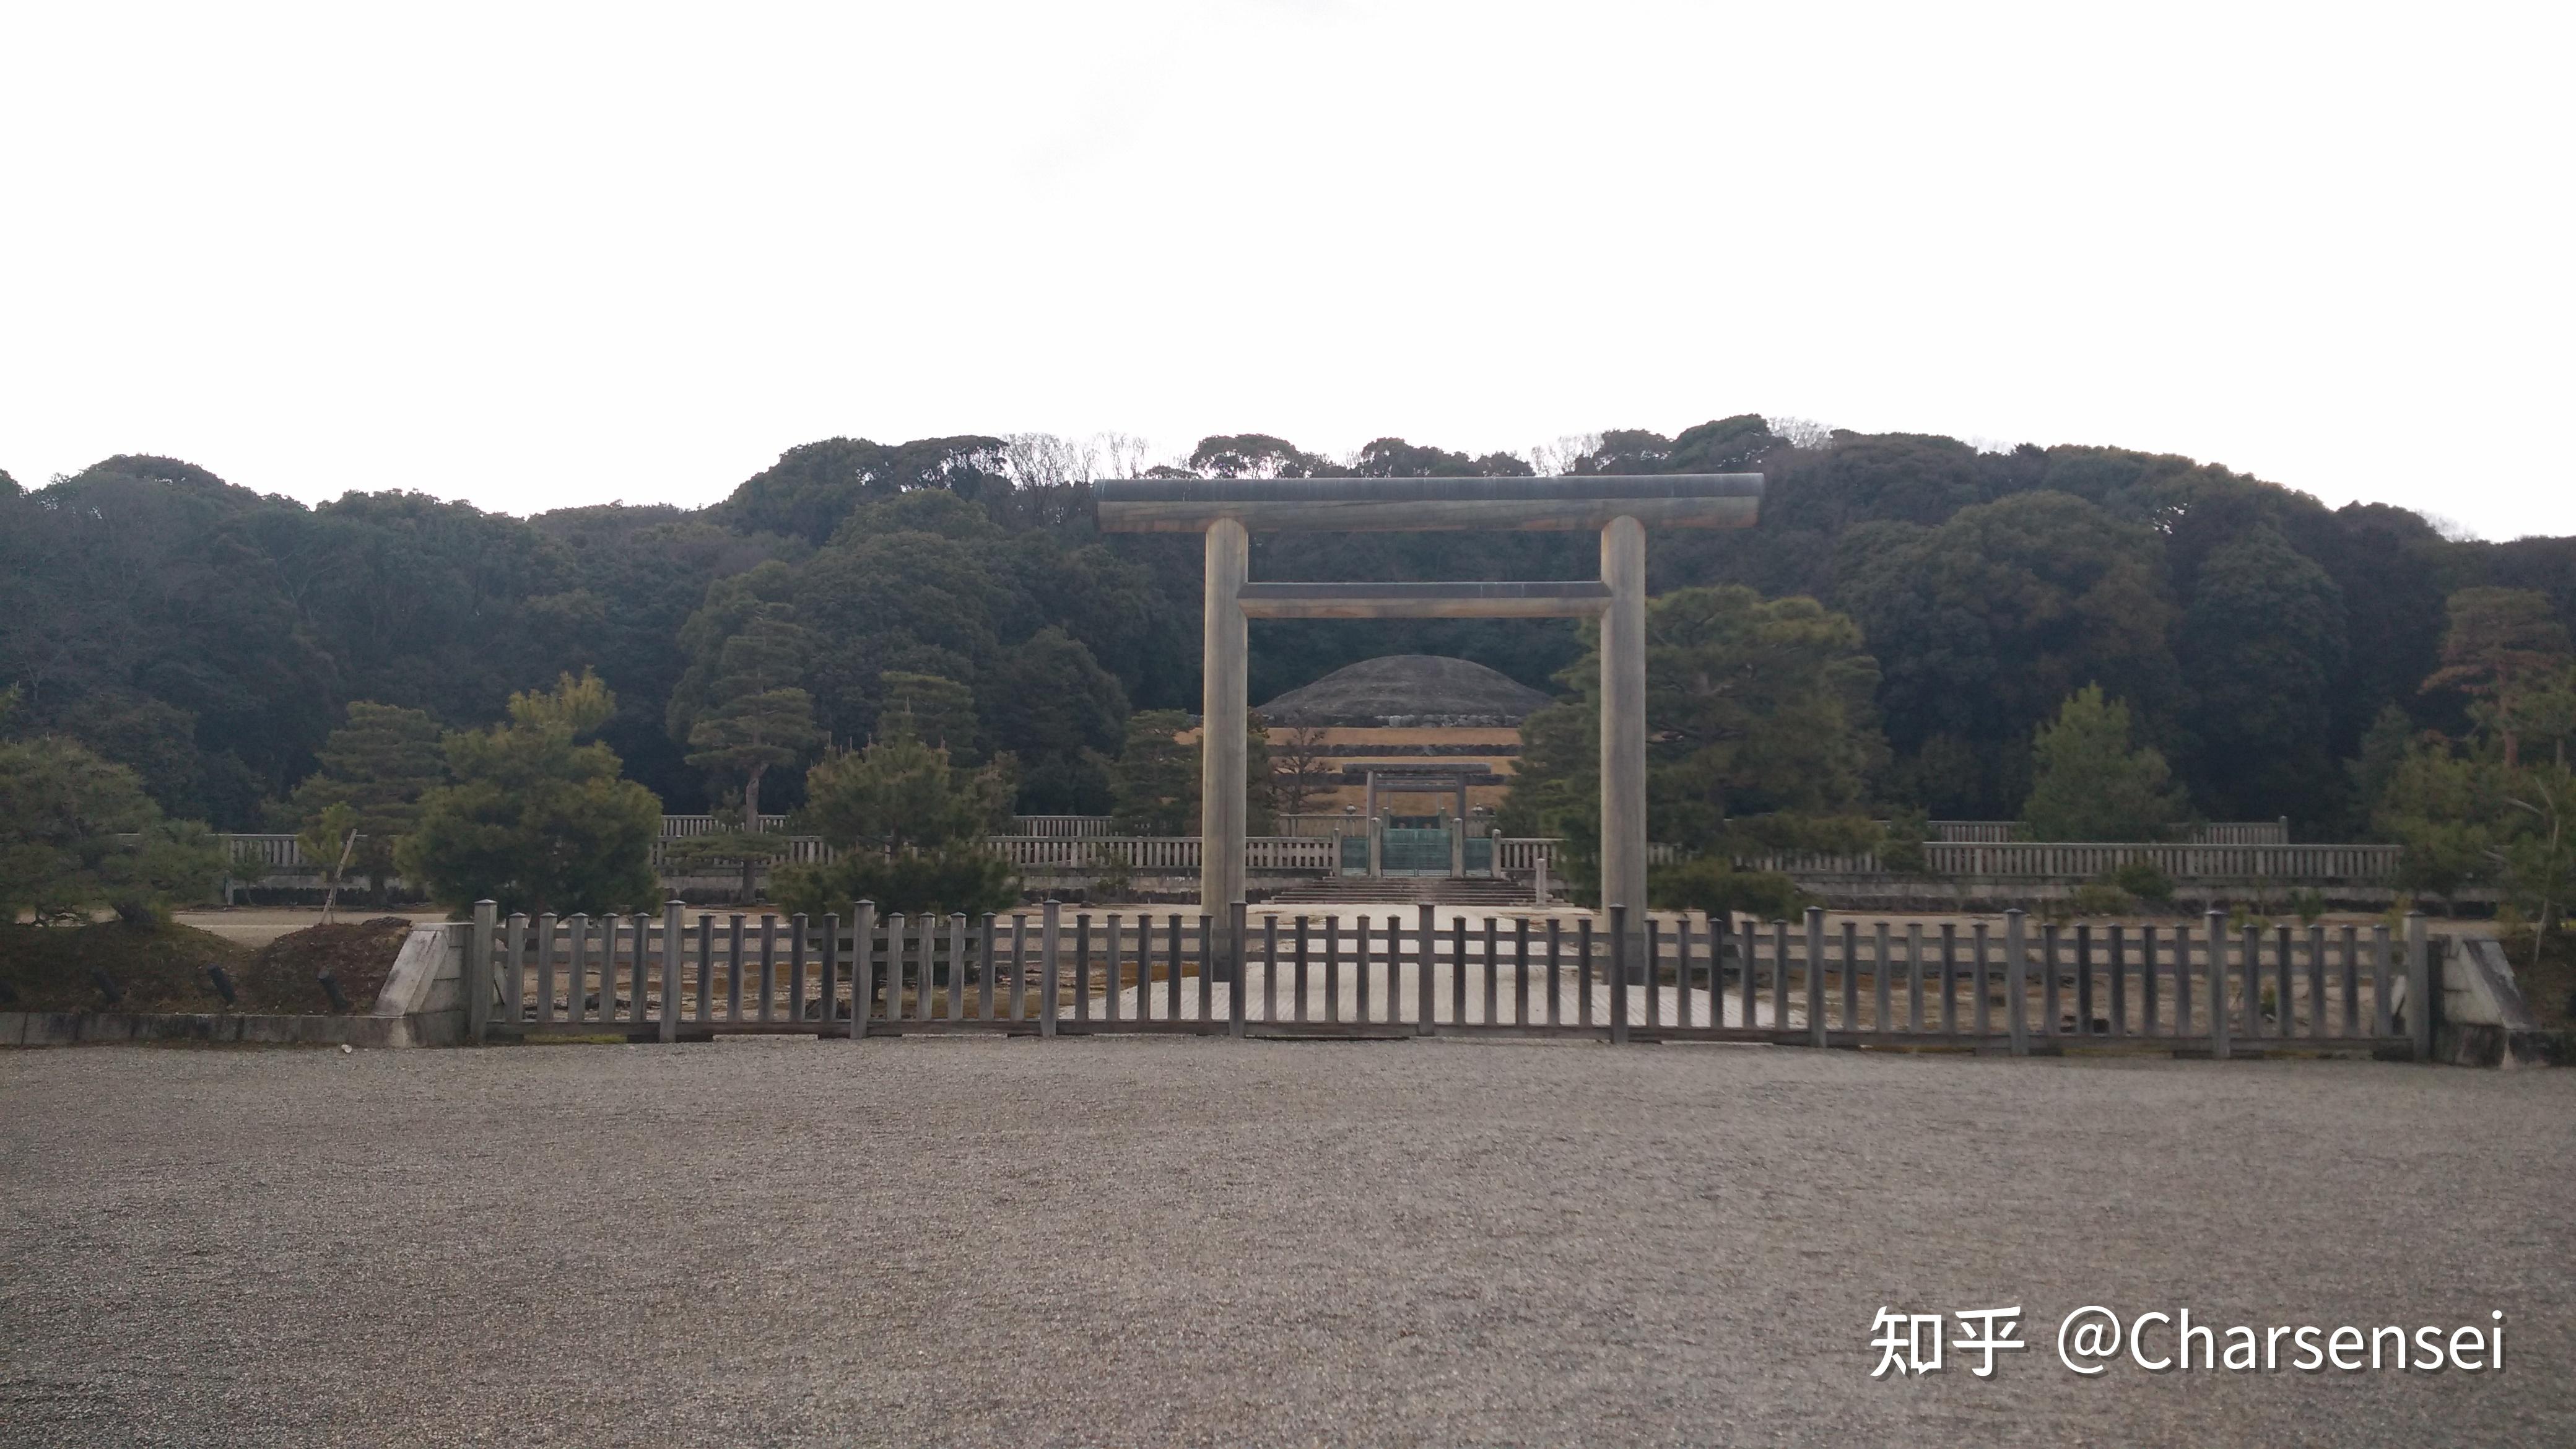 日本挖掘天皇陵墓图片